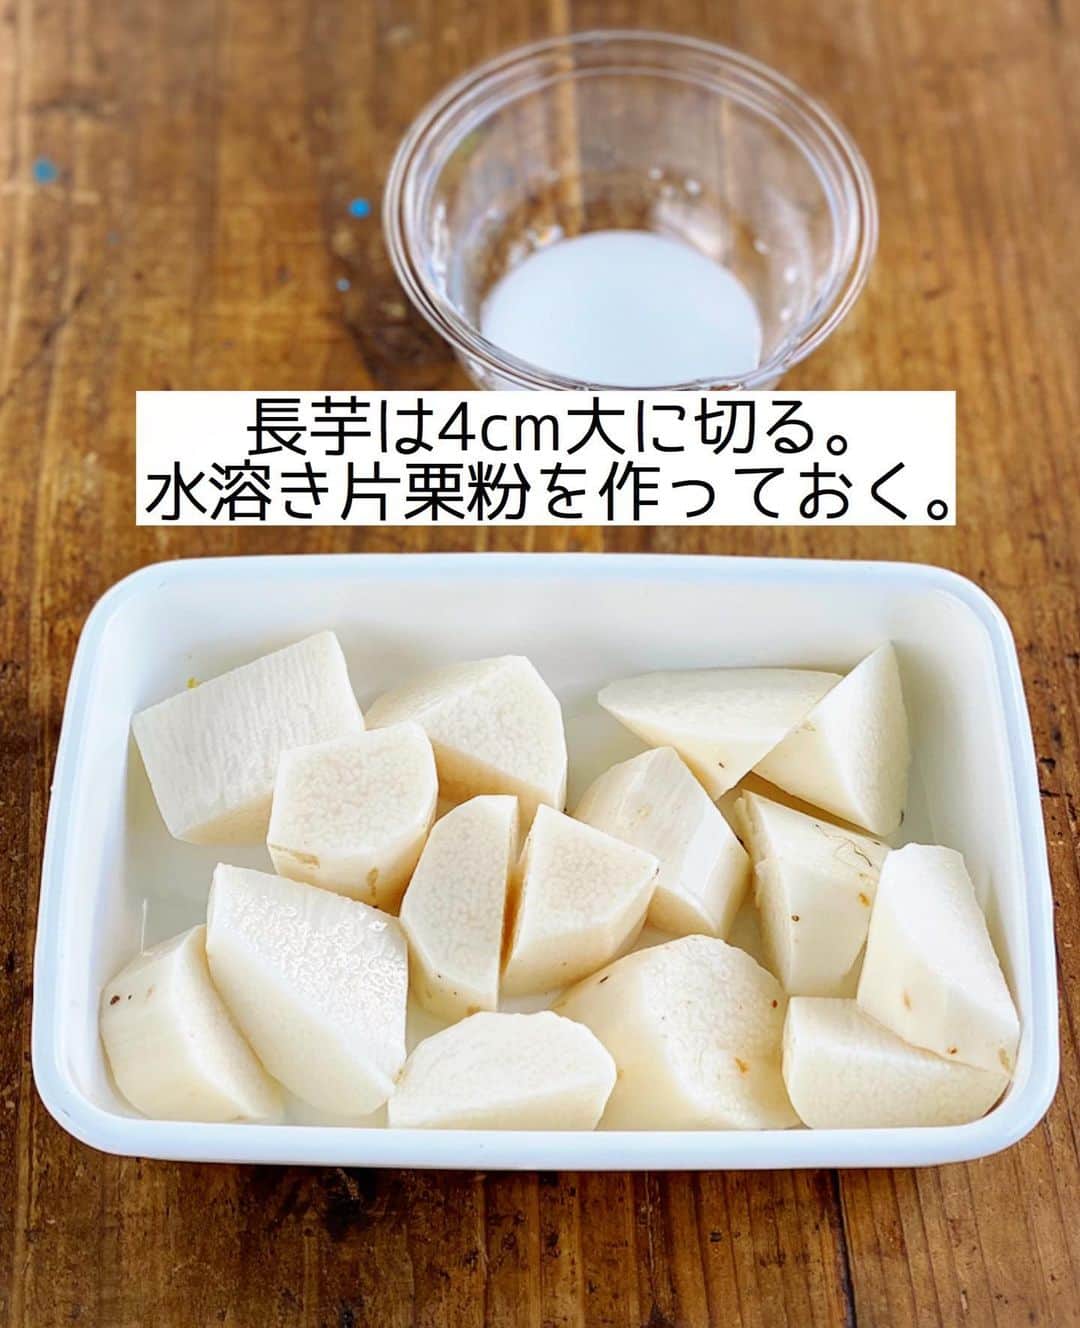 Mizuki【料理ブロガー・簡単レシピ】さんのインスタグラム写真 - (Mizuki【料理ブロガー・簡単レシピ】Instagram)「・﻿ 【#レシピ 】ーーーーーーー﻿ ♡長芋のそぼろあんかけ♡﻿ ーーーーーーーーーーーーー﻿ ﻿ ﻿ ﻿ おはようございます(*^^*)﻿ ﻿ 今日ご紹介させていただくのは﻿ \長芋のそぼろあんかけ/﻿ ホクホクの長芋に﻿ とろっとろの甘辛あんがからんで﻿ とってもごはんに合いますよ♡﻿ ﻿ お鍋ひとつでできて﻿ メインにも副菜にもなるので﻿ よかったらお試し下さいね(*´艸`)﻿ ﻿ ﻿ ﻿ ＿＿＿＿＿＿＿＿＿＿＿＿＿＿＿＿＿＿＿＿﻿ 【2人分】﻿ 長芋...300g﻿ 鶏ひき肉...100g﻿ サラダ油...小1﻿ ●水...200ml﻿ ●和風だし...小1/3﻿ ●砂糖・醤油・酒...各大1.5﻿ ●生姜チューブ...3cm﻿ ☆片栗粉・水...各大1﻿ (あれば)万能ねぎ...適量﻿ ﻿ 1.長芋は皮を剥いて4cm大に切る。☆を混ぜて水溶き片栗粉を作る。﻿ 2.鍋にサラダ油を中火で熱してひき肉を炒める。色が変わったら●と長芋を加え、煮立ったら落とし蓋をのせ、弱めの中火で10分煮る。﻿ 3.弱火にして水溶き片栗粉を加え、手早く混ぜてとろみをつける。器に盛り、斜め切りにしたねぎをのせる。﻿ ￣￣￣￣￣￣￣￣￣￣￣￣￣￣￣￣￣￣￣￣﻿ ﻿ ﻿ ﻿ 《ポイント》﻿ ♦︎落とし蓋はアルミホイルでOK♩﻿ ♦︎長芋の食感を残したい場合は煮込み時間を短めにしても♩﻿ ♦︎甘めの味付けです♩﻿ ﻿ ﻿ ﻿ ﻿ ﻿ ﻿ ﻿ _____________________________________﻿ 💓新刊予約開始しました💓﻿ Amazon予約キャンペーン実施中🎁﻿ ￣￣￣￣￣￣￣￣￣￣￣￣￣￣￣￣￣﻿ \15分でいただきます/﻿ #Mizukiの2品献立﻿ (9月24日発売・マガジンハウス)﻿ ﻿ 忙しい私たちには﻿ 2品くらいがちょうどいい！﻿ 『しんどくない献立、考えました』﻿ ￣￣￣￣￣￣￣￣￣￣￣￣￣￣￣￣﻿ ﻿ メインはフライパン﻿ 副菜はレンジ(又は和えるだけ)の2品献立💕﻿ メインを作っている合間にできる﻿ レンチン副菜を組み合わせることで﻿ 15分で2品が同時に完成します！﻿ (別腹デザートも掲載😂)﻿ ﻿ ﻿ ーーーーーPART.1 ーーーーー﻿ 【Mizukiのお墨つき！２品献立ベスト10】﻿ 約15分でできる10献立をご紹介！﻿ メインは全部フライパン、副菜はレンチンor混ぜるだけ♡﻿ ﻿ ーーーーーPART.2 ーーーーー﻿ 【フライパンひとつ！今夜のメインおかず】﻿ 献立の主役になる肉や魚のおかず50品！﻿ Part3の副菜と組み合わせれば﻿ 献立のバリエーションが広がりますよ♩﻿ ﻿ ーーーーー PART.3 ーーーーー﻿ 【合間に作れる！ 野菜別かんたん副菜】﻿ レンチンor和えるだけの副菜レシピを﻿ 素材別にたっぷり収録♩﻿ ﻿ ーーーーー番外編ーーーーー﻿ 【ひとつで満足！ご飯＆麺】﻿ 【具だくさん！おかずスープ】﻿ 【オーブンいらずのおやつレシピ】﻿ ￣￣￣￣￣￣￣￣￣￣￣￣￣￣￣￣￣￣﻿ ﻿ ﻿ 🎁🎁🎁🎁🎁🎁🎁🎁🎁🎁🎁🎁﻿ Amazon予約プレゼントキャンペーン﻿ 🎁🎁🎁🎁🎁🎁🎁🎁🎁🎁🎁🎁﻿ ﻿ 皆様に感謝の気持ちを込めて﻿ ご用意させていただきました✨﻿ ﻿ ＿＿＿＿＿＿＿＿＿＿＿＿＿＿＿＿＿﻿ 新刊【2品献立】をAmazonで予約し﻿ インスタにアップして下さった方に﻿ 抽選で［フライパン］or［ボールセット］を﻿ プレゼントさせていただきます♩﻿ ￣￣￣￣￣￣￣￣￣￣￣￣￣￣￣￣￣﻿ ﻿ ✅【インスタ応募方法▼】﻿ ①本の表紙の画像を1枚目に、﻿ Amazonで予約したことがわかる画像を﻿ 2枚目に貼り付け(どちらもスクショでOK)﻿ ［#Mizukiの2品献立 ］のハッシュタグを付けて投稿！﻿ 以上で応募完了です(*^^*)﻿ ﻿ ￣￣￣￣￣￣￣￣￣￣￣￣￣￣￣￣￣￣﻿ ハイライトにリンク🔗あります💓﻿ ﻿ ﻿ ﻿ ﻿ ﻿ ﻿ ￣￣￣￣￣￣￣￣￣￣￣￣￣￣￣￣￣￣﻿ レシピを作って下さった際や﻿ レシピ本についてのご投稿には﻿ タグ付け( @mizuki_31cafe )して﻿ お知らせいただけると嬉しいです😊💕﻿ ﻿ ﻿ ﻿ ﻿ ﻿ #長芋#あんかけ#甘辛#和食#ひき肉#Mizuki#簡単レシピ#時短レシピ#節約レシピ#料理#フーディーテーブル#マカロニメイト#おうちごはん#デリスタグラマー#料理好きな人と繋がりたい#食べ物#料理記録#おうちごはんlover#写真好きな人と繋がりたい#foodpic#cooking#recipe#lin_stagrammer#foodporn#yummy#f52grams#長芋のそぼろあんかけm」9月16日 7時30分 - mizuki_31cafe